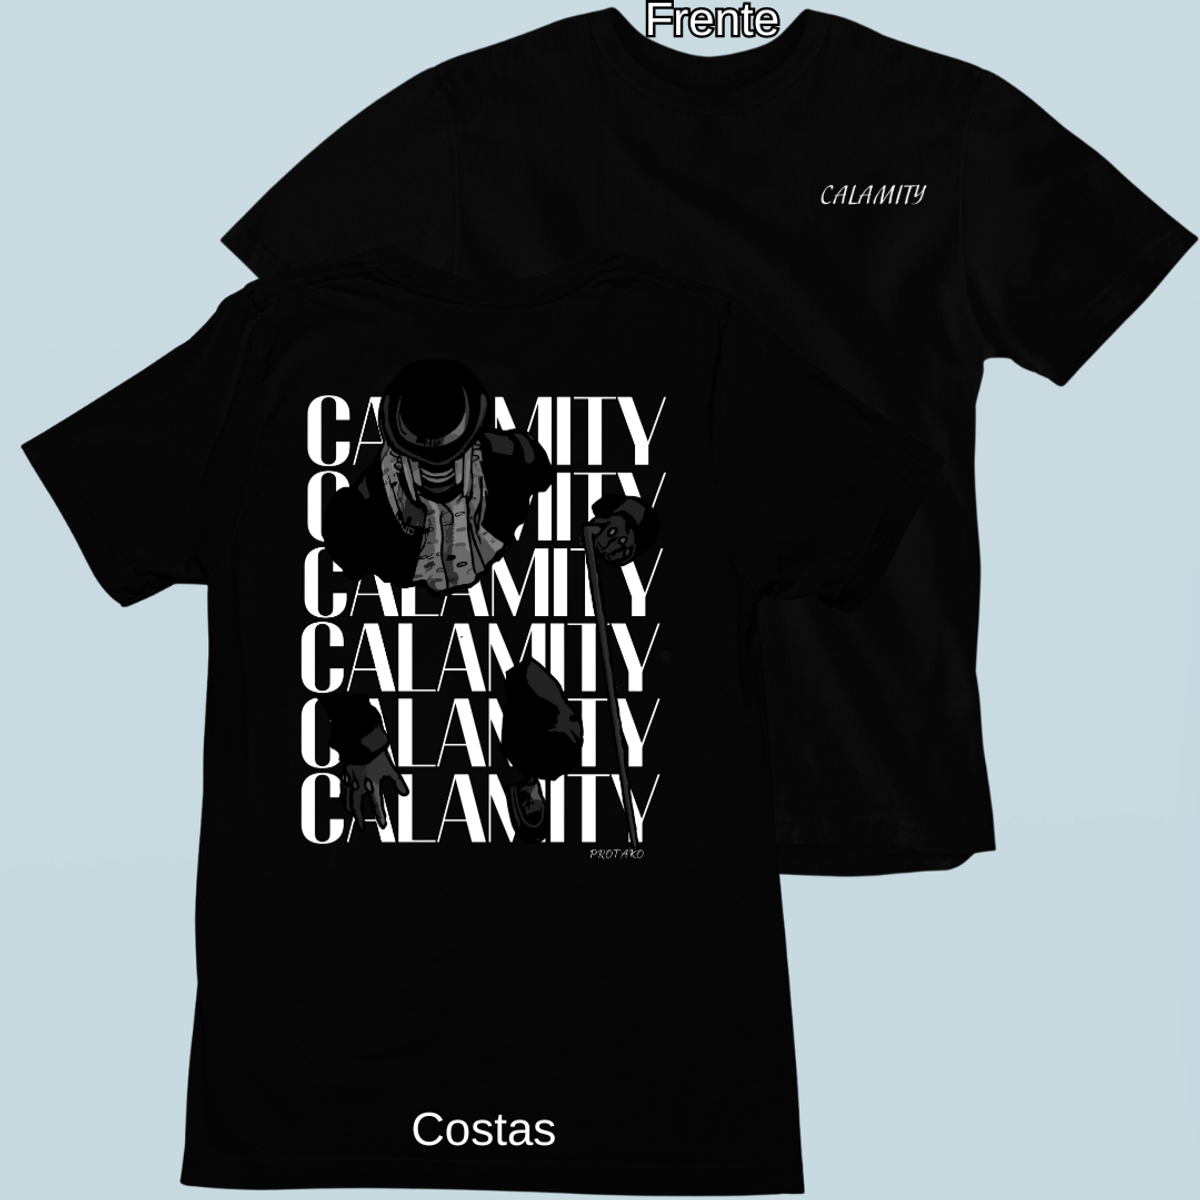 Nome do produto: Camiseta Calamity Frente Costas